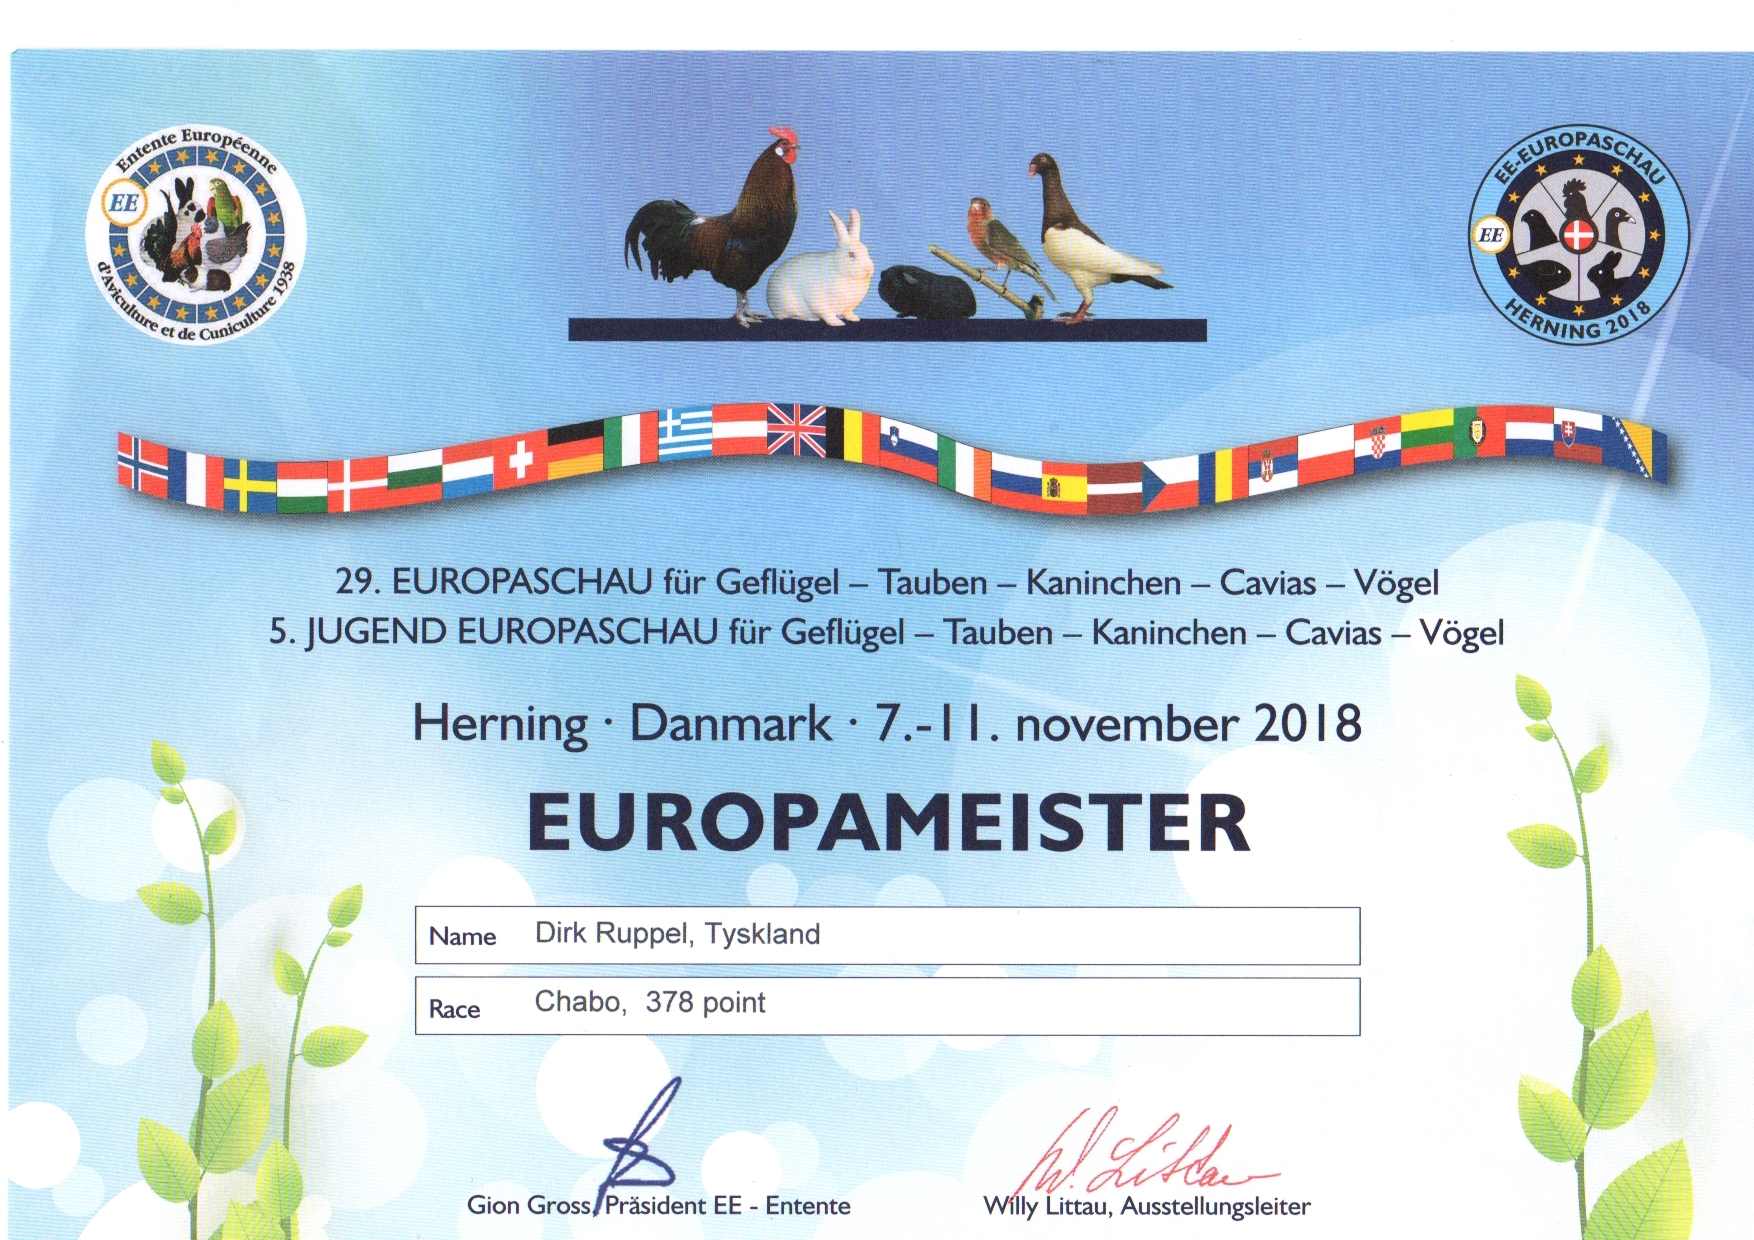 Europameister 2018 Dnemark Herning